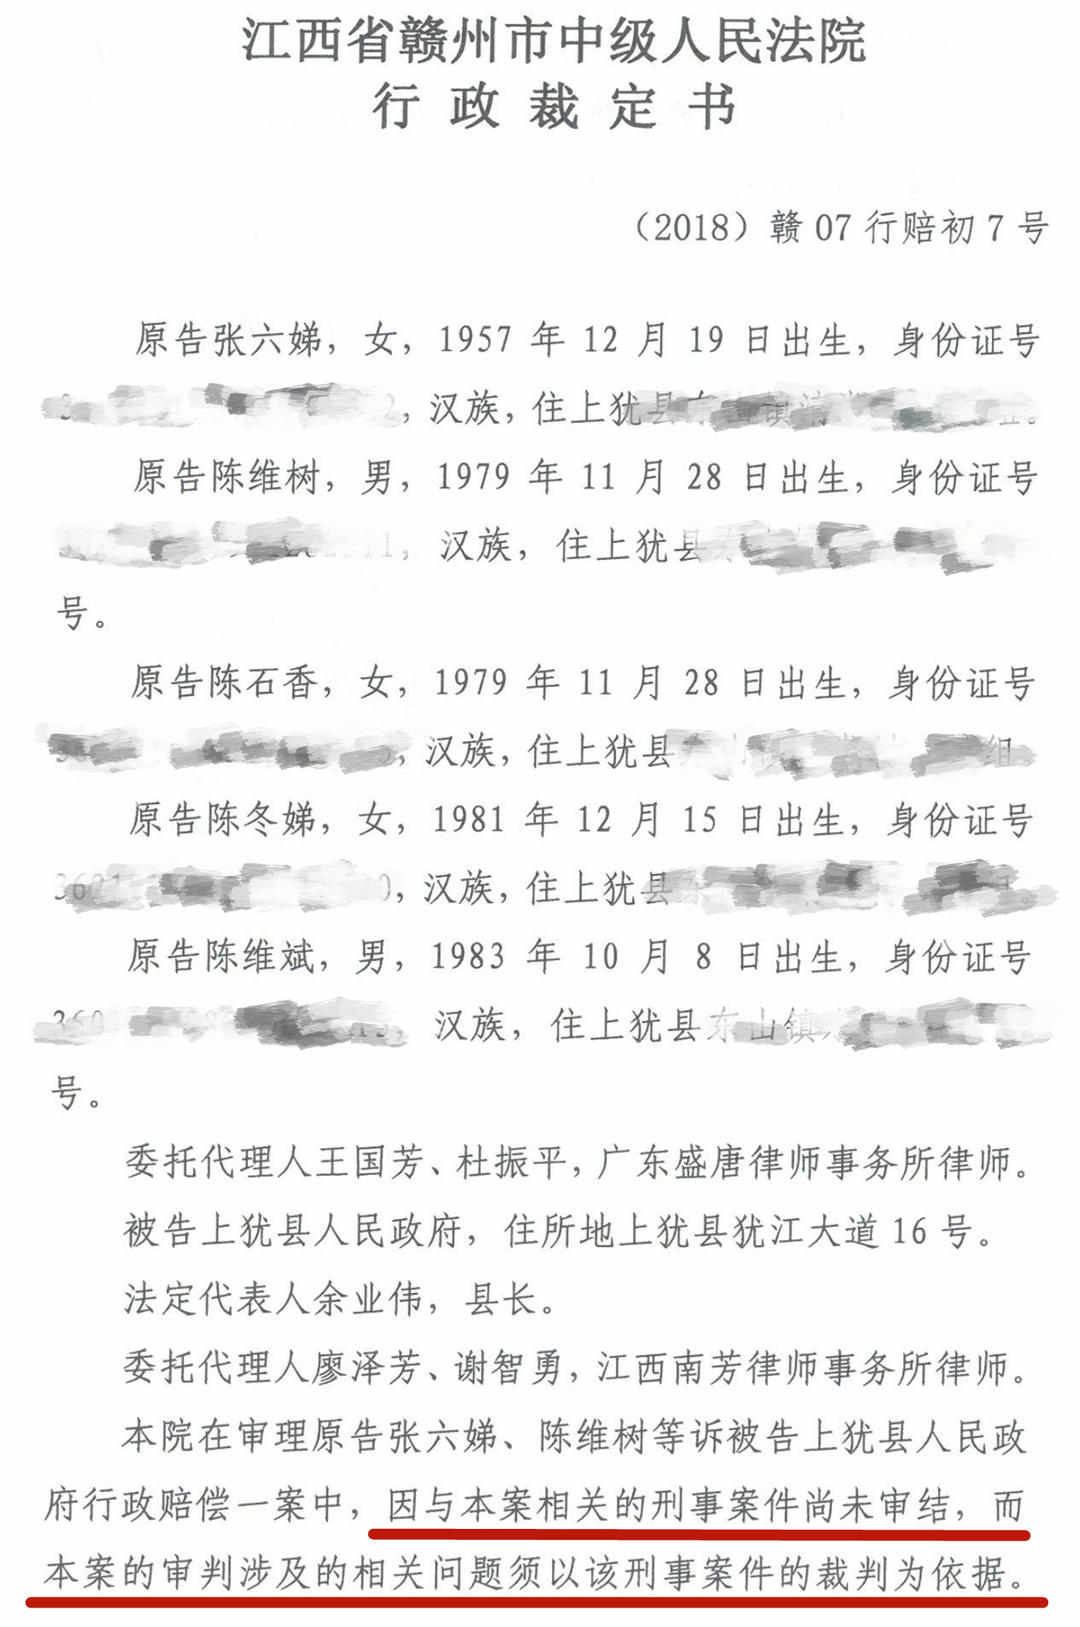 “陈裕咸被截访致死”判决:12名截访人员被判3至14年